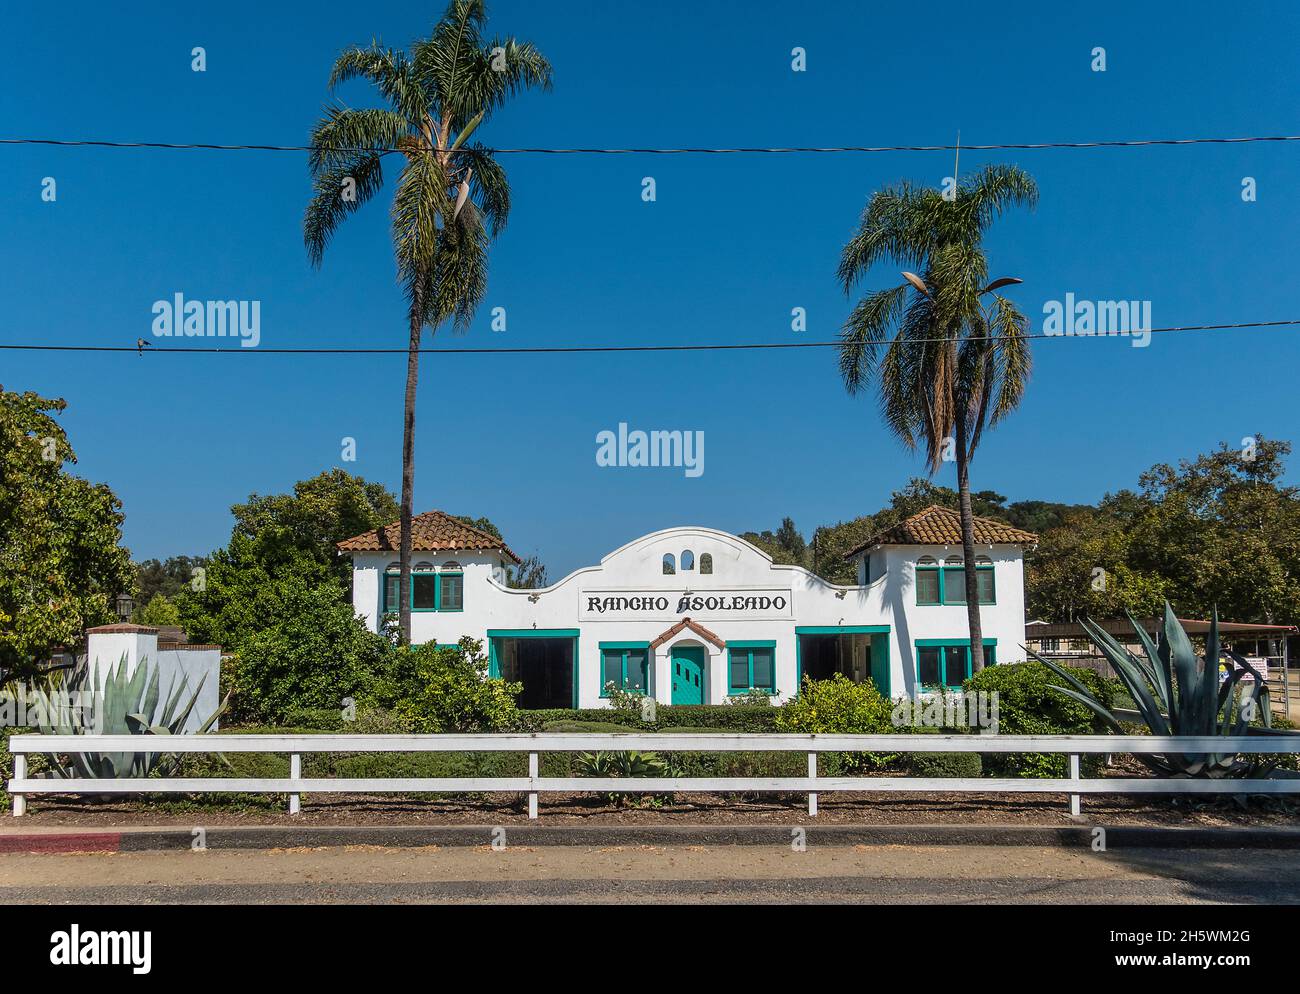 Une élévation frontale de l'architecture de style Mission de Rancho Asoleado un centre équin dans le comté de Santa Barbara, Californie. Banque D'Images